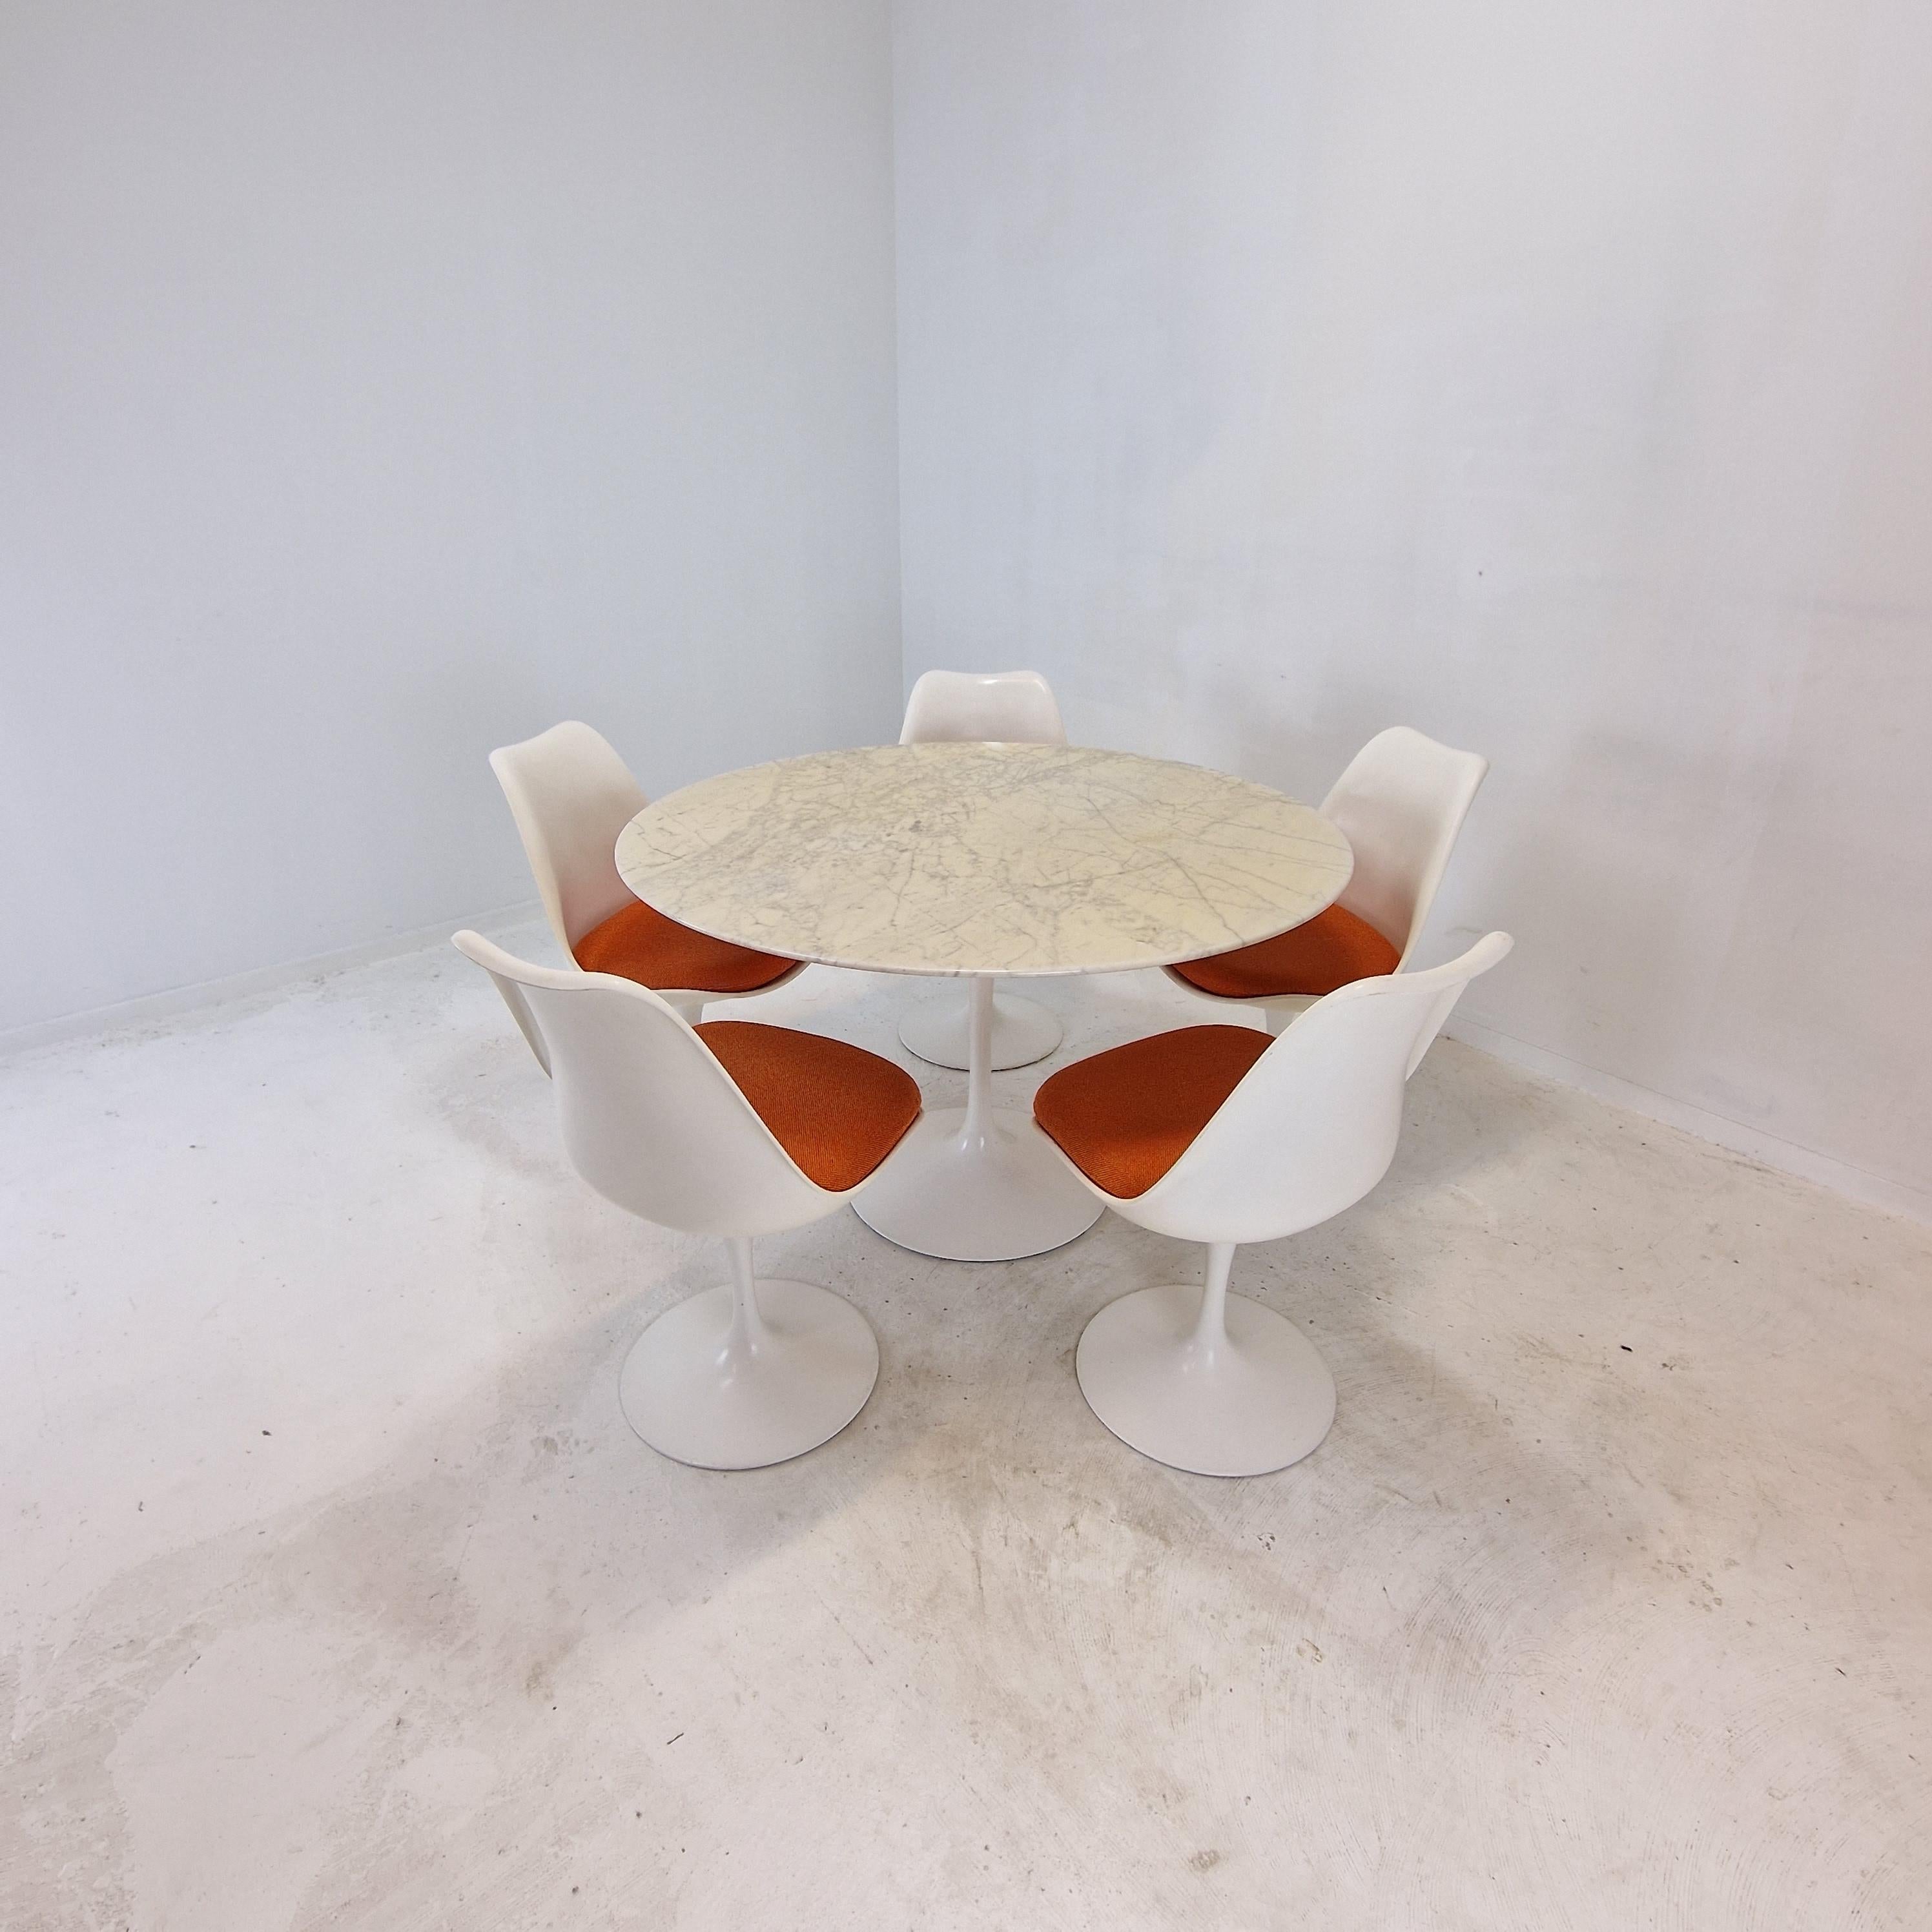 Magnifique ensemble de salle à manger Tulip, entièrement original, conçu par Eero Saarinen.
Il est produit par Knoll International dans les années 1960. 

L'ensemble se compose de 5 chaises tulipes d'origine et d'une table ronde en marbre assortie,